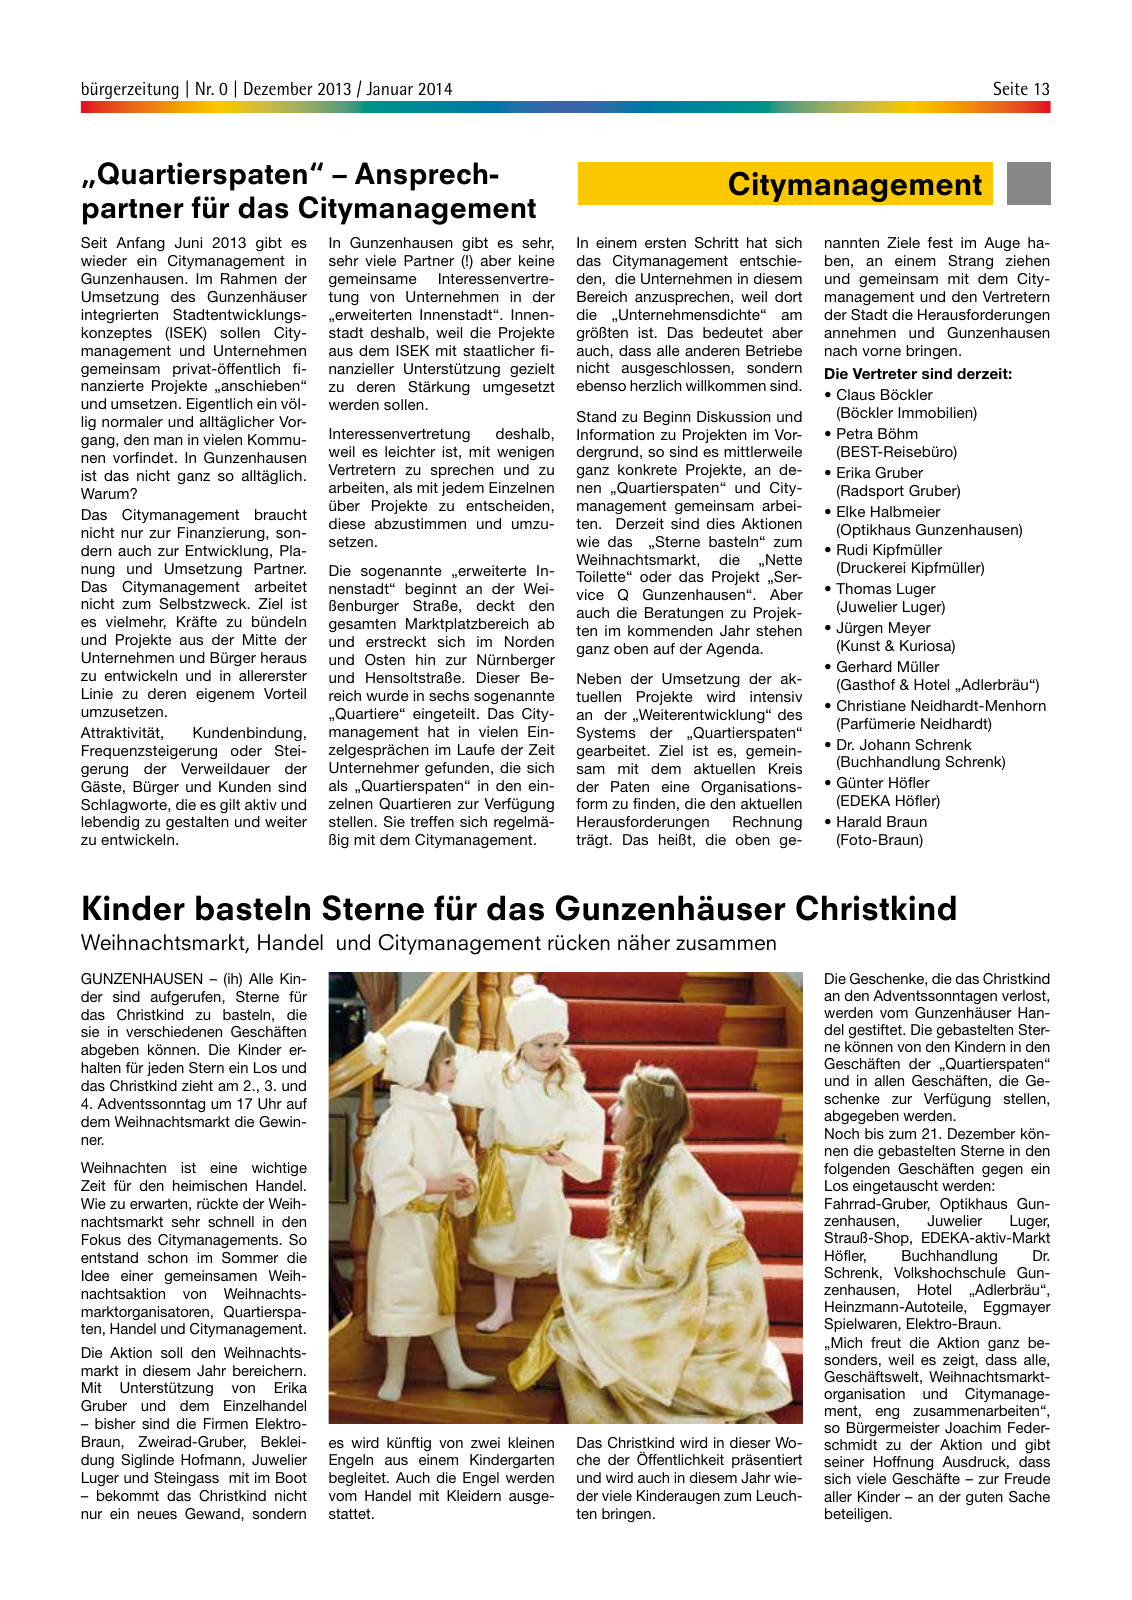 Vorschau bürgerzeitung Nr. 0 Dezember 2013 Januar 2014 Seite 13